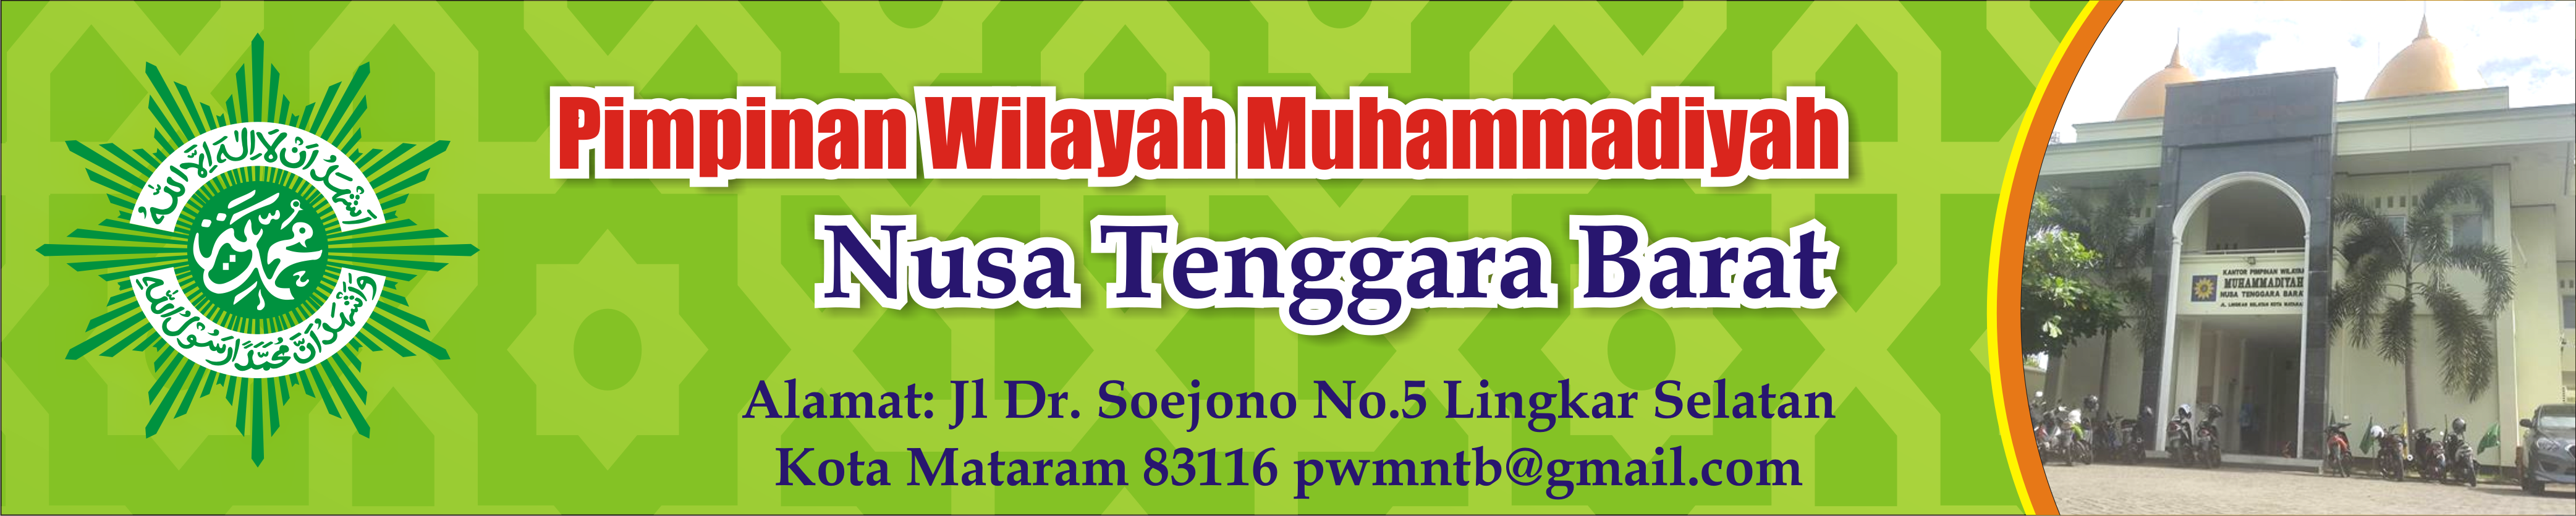 Majelis Pendidikan Dasar dan Menengah Pimpinan Wilayah Muhammadiyah Nusa Tenggara Barat